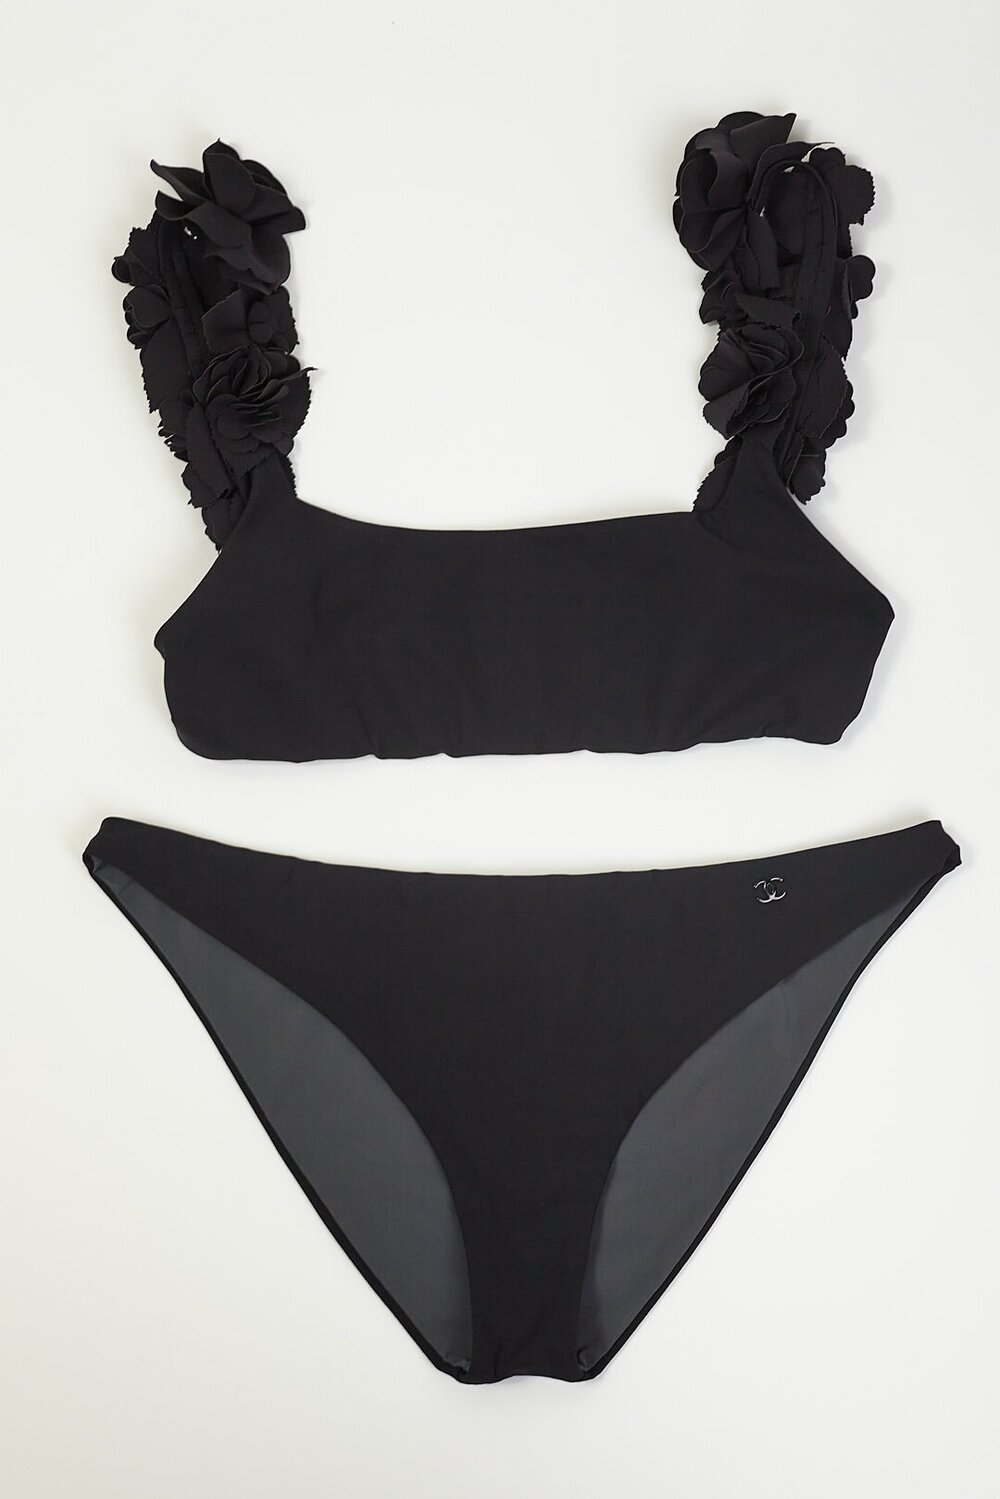 CHANEL 00s Black Camellia Flower Strap Swim Suit — Garment